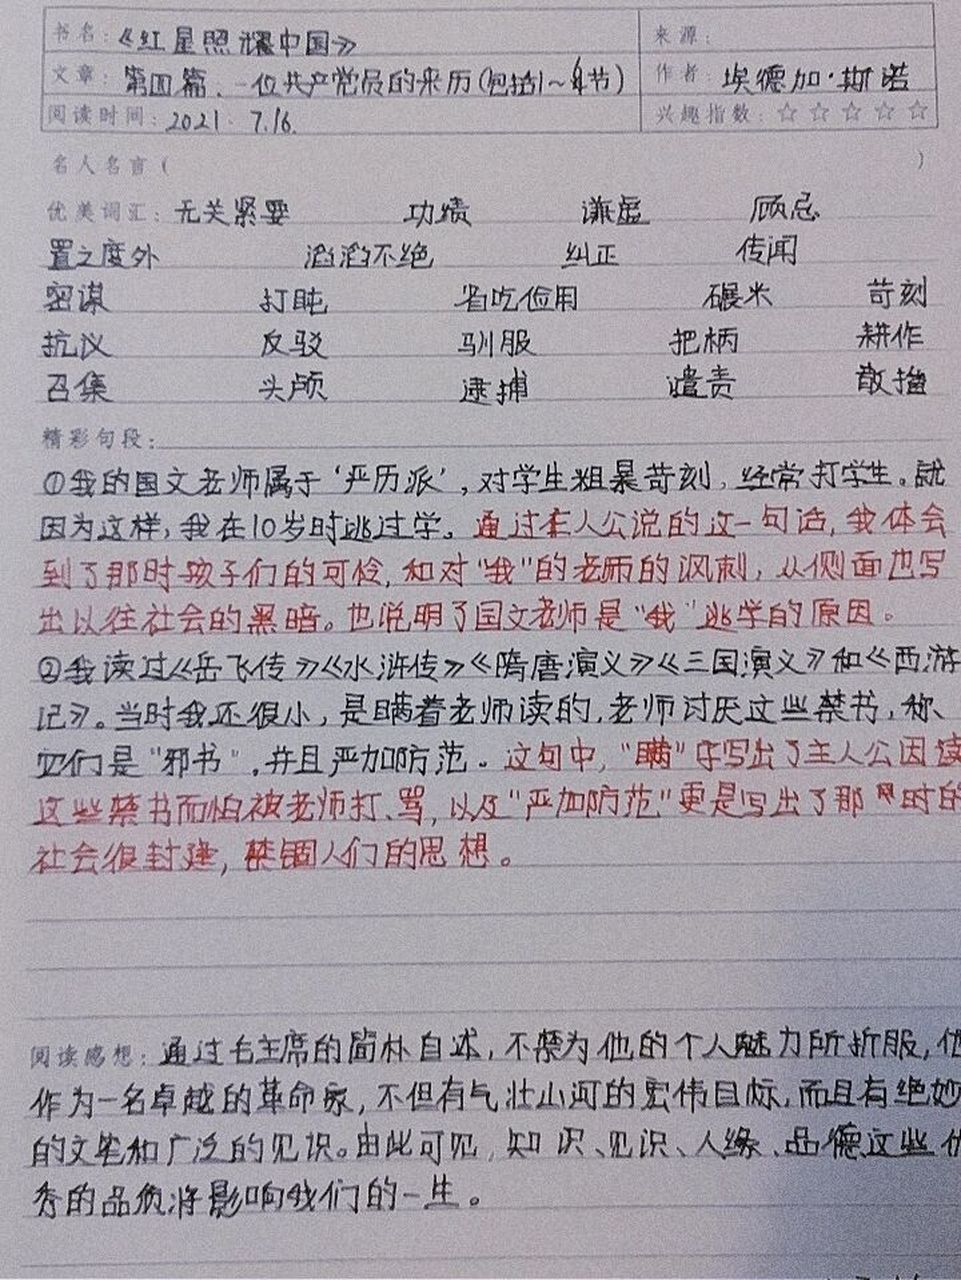 《红星照耀中国》第四篇读书笔记 这是第四篇读书笔记